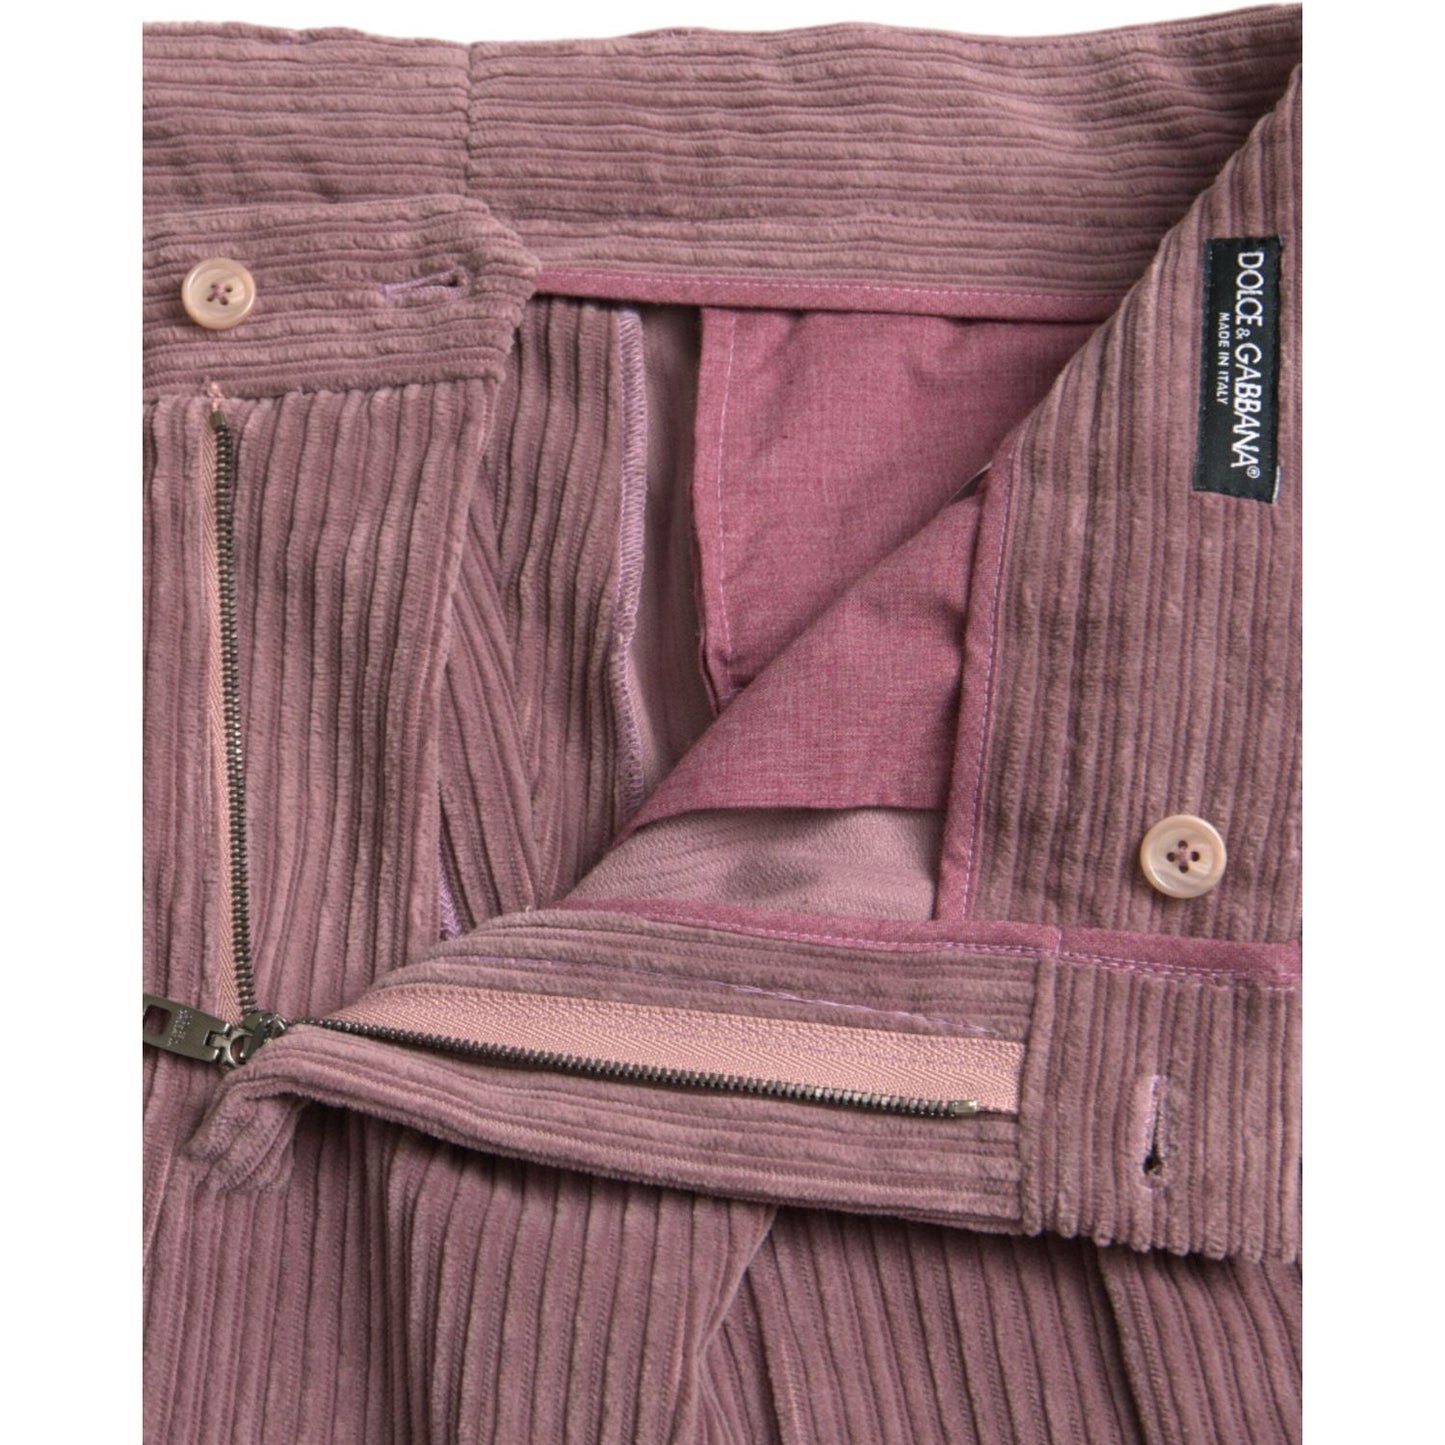 Dolce & Gabbana Purple Corduroy Cotton Stretch Skinny Pants purple-corduroy-cotton-stretch-skinny-pants